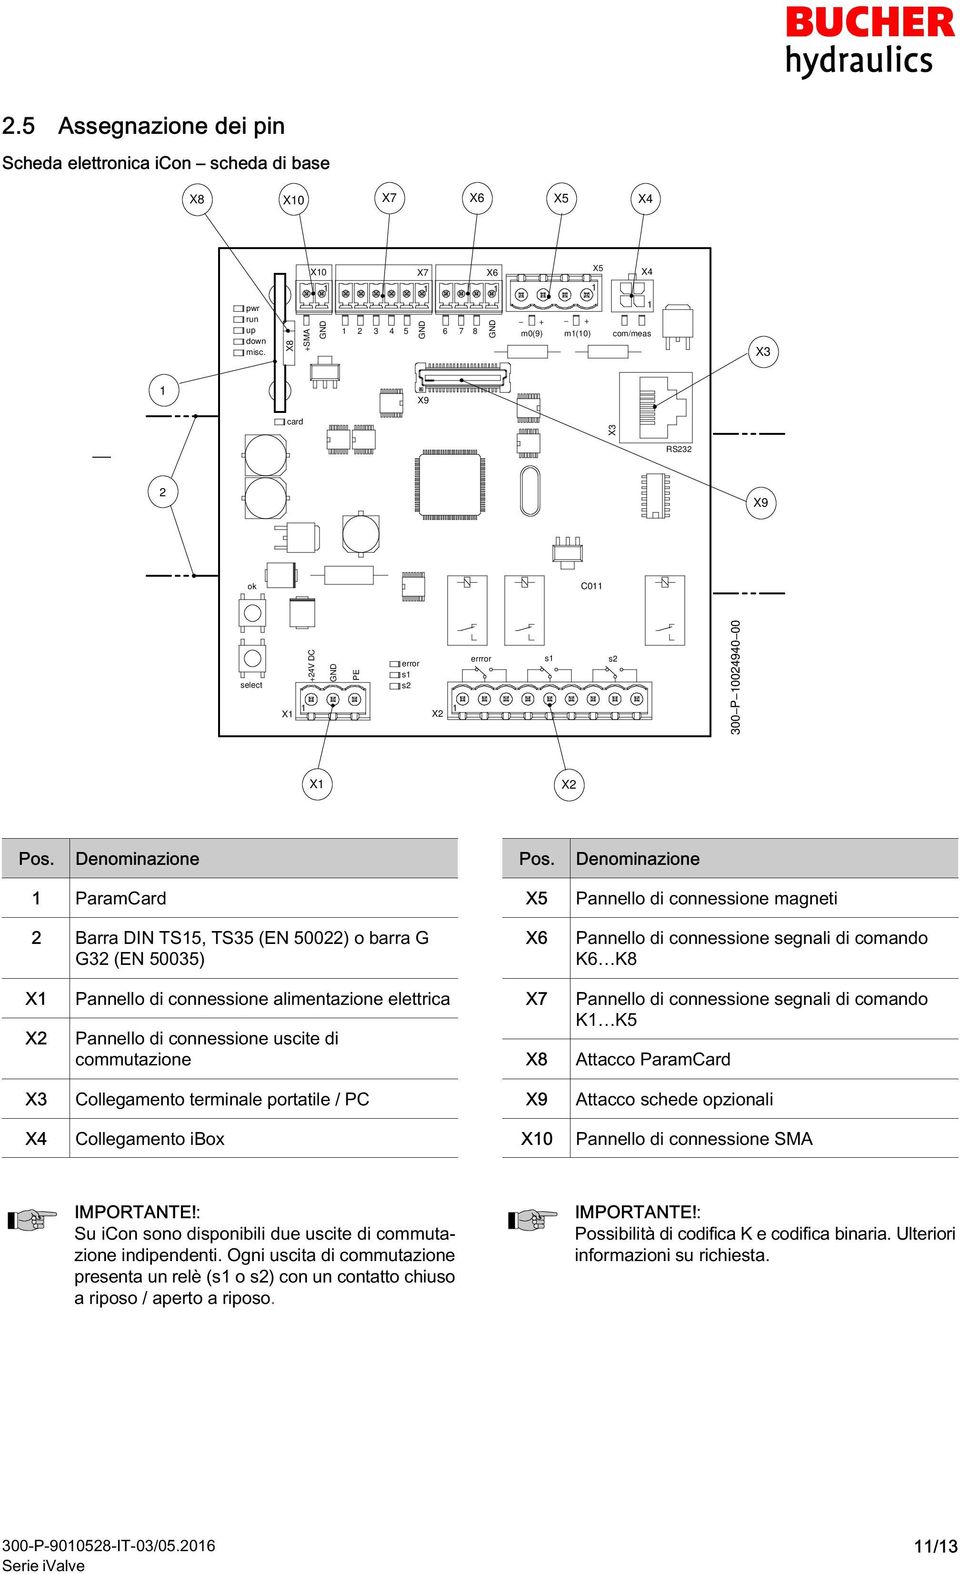 Pos. ParamCard Barra DIN TS5, TS5 (EN 500) o barra G G (EN 5005) X5 X6 Pannello di connessione magneti Pannello di connessione segnali di comando K6 K8 X X Pannello di connessione alimentazione